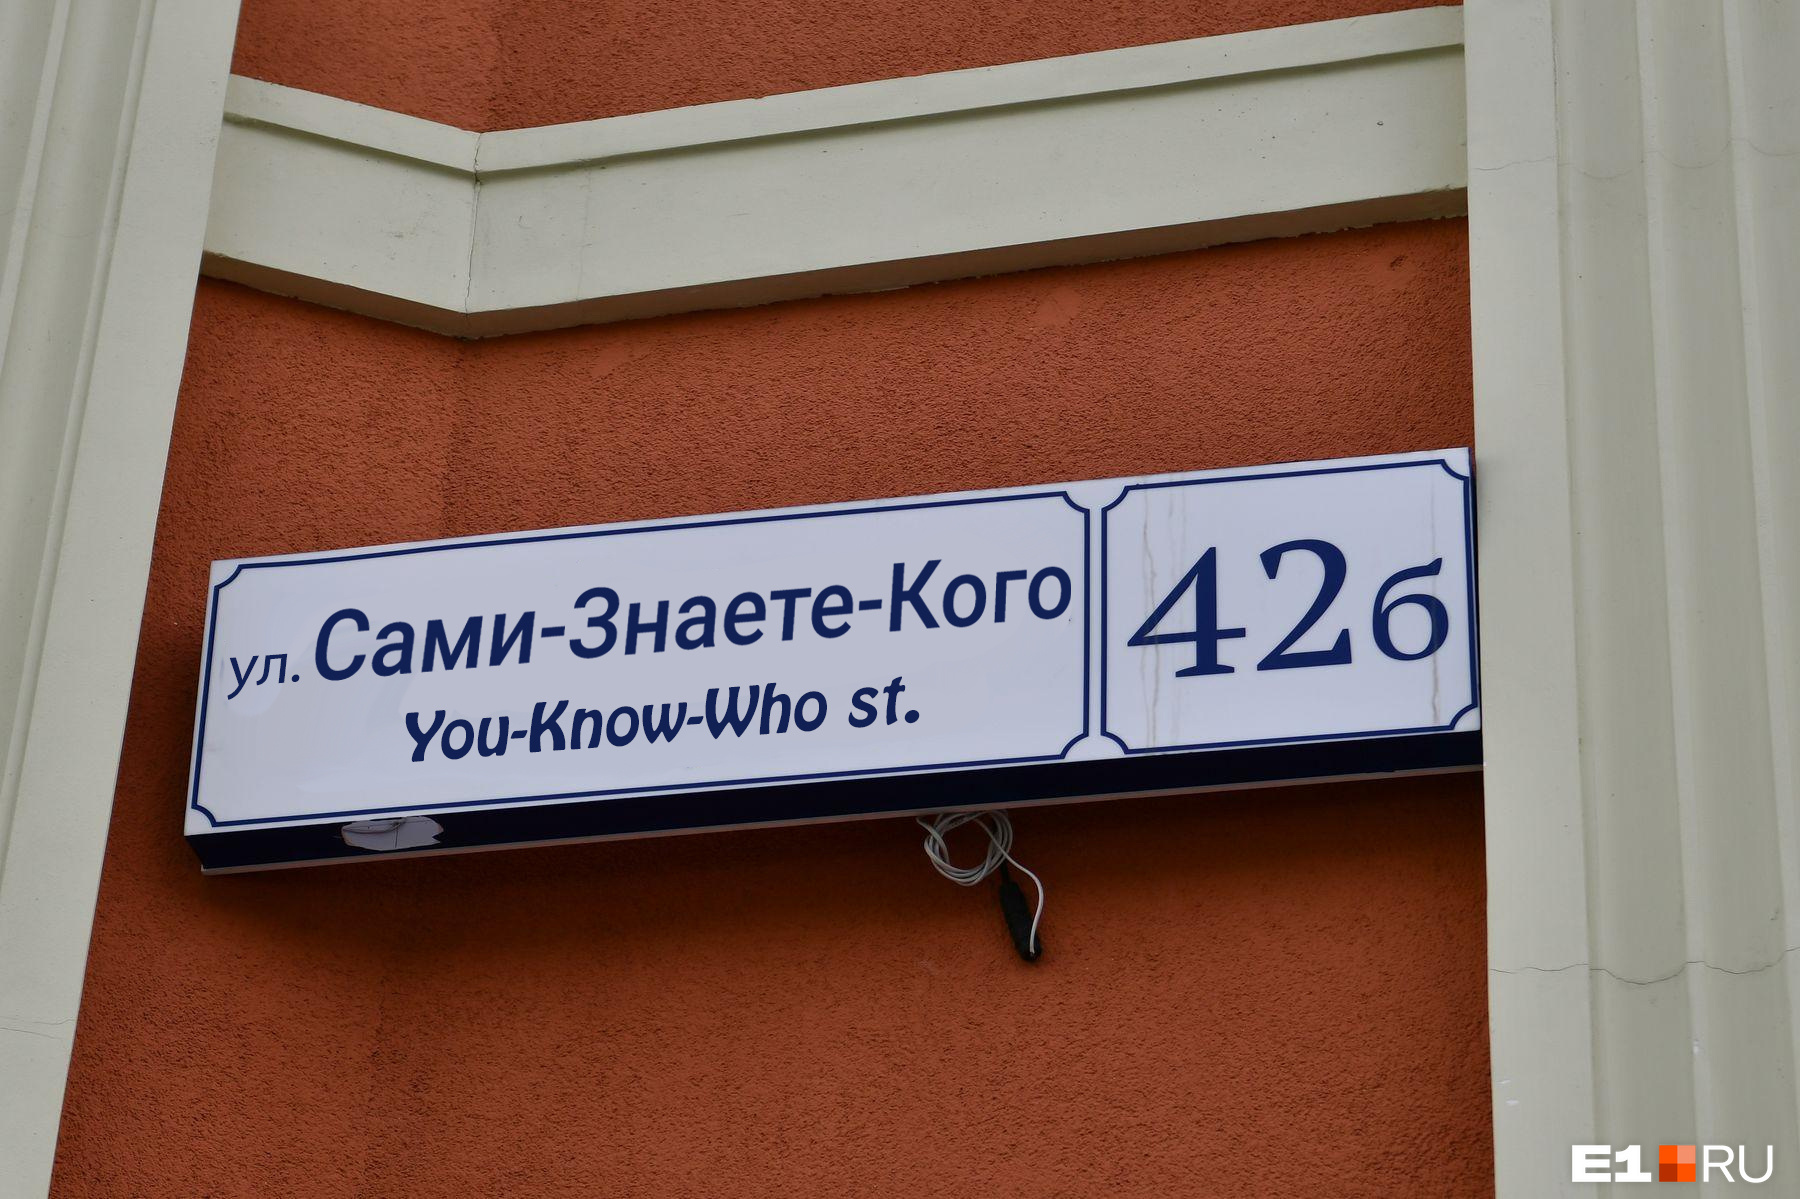 Не только революционеры: в честь кого называют улицы в Екатеринбурге? Пройдите сложный тест